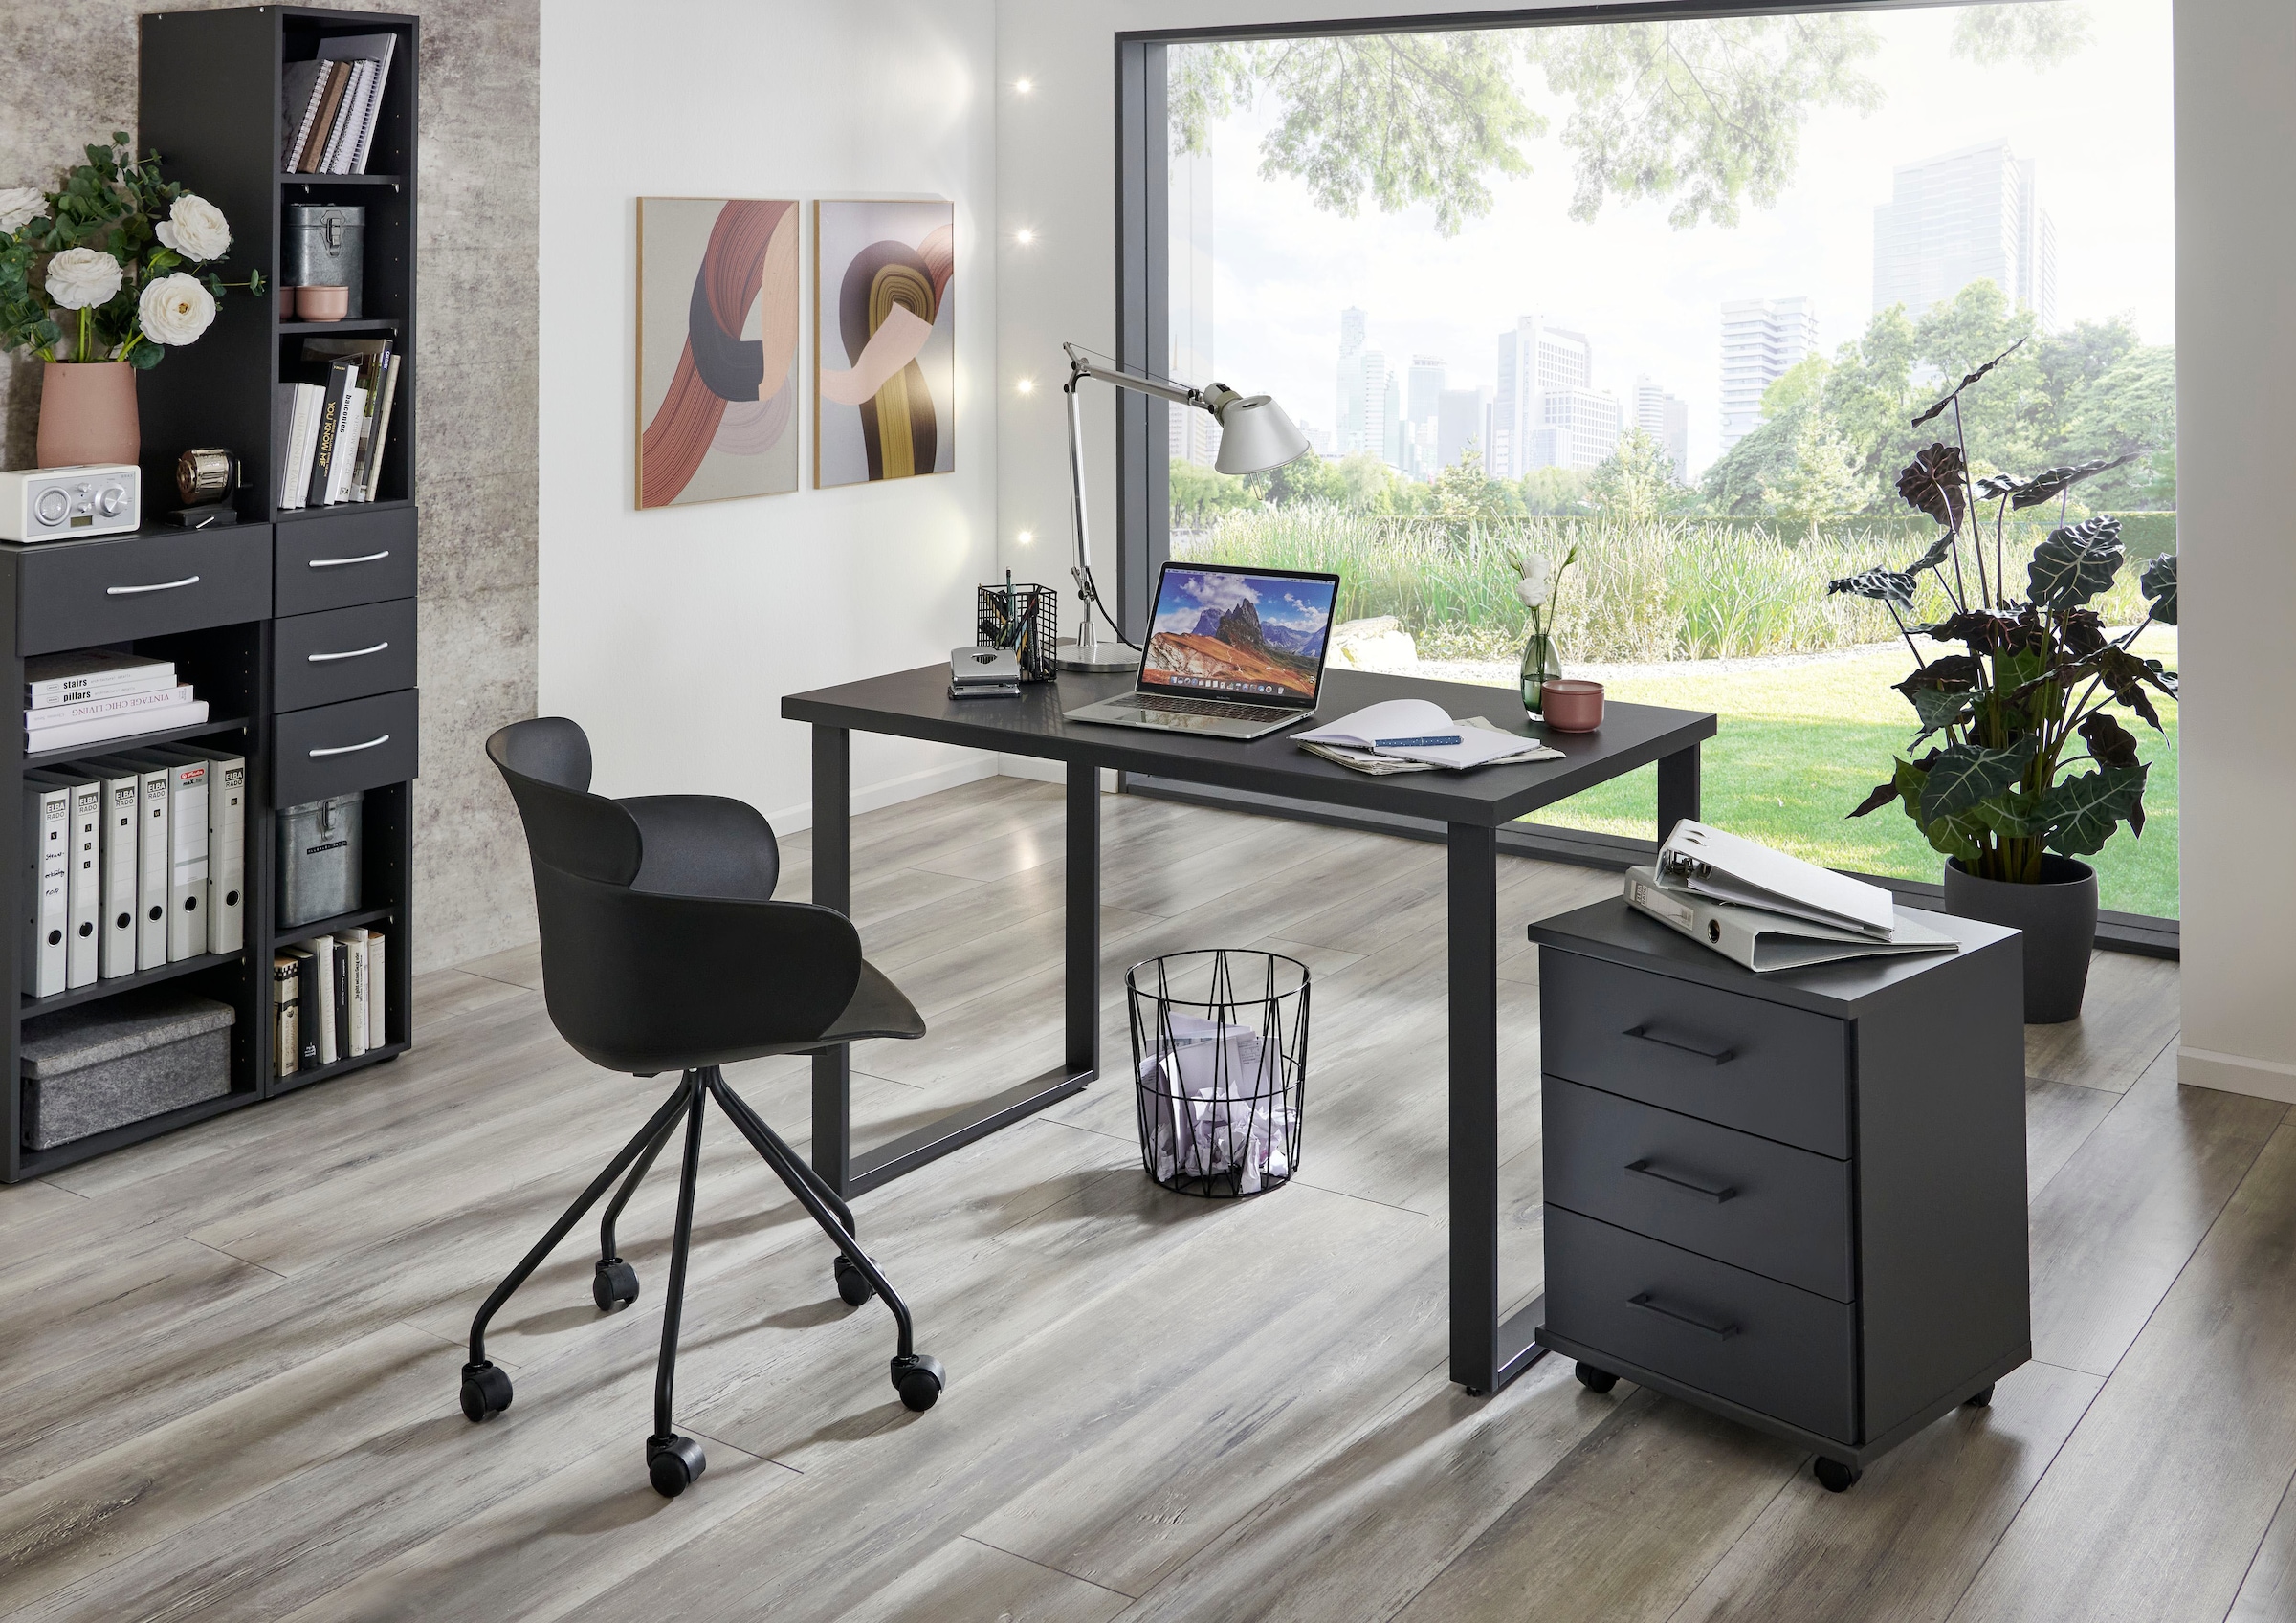 Wimex Rollcontainer »Home Desk«, mit 3 Schubladen, 46cm breit, 58cm hoch  bei OTTO